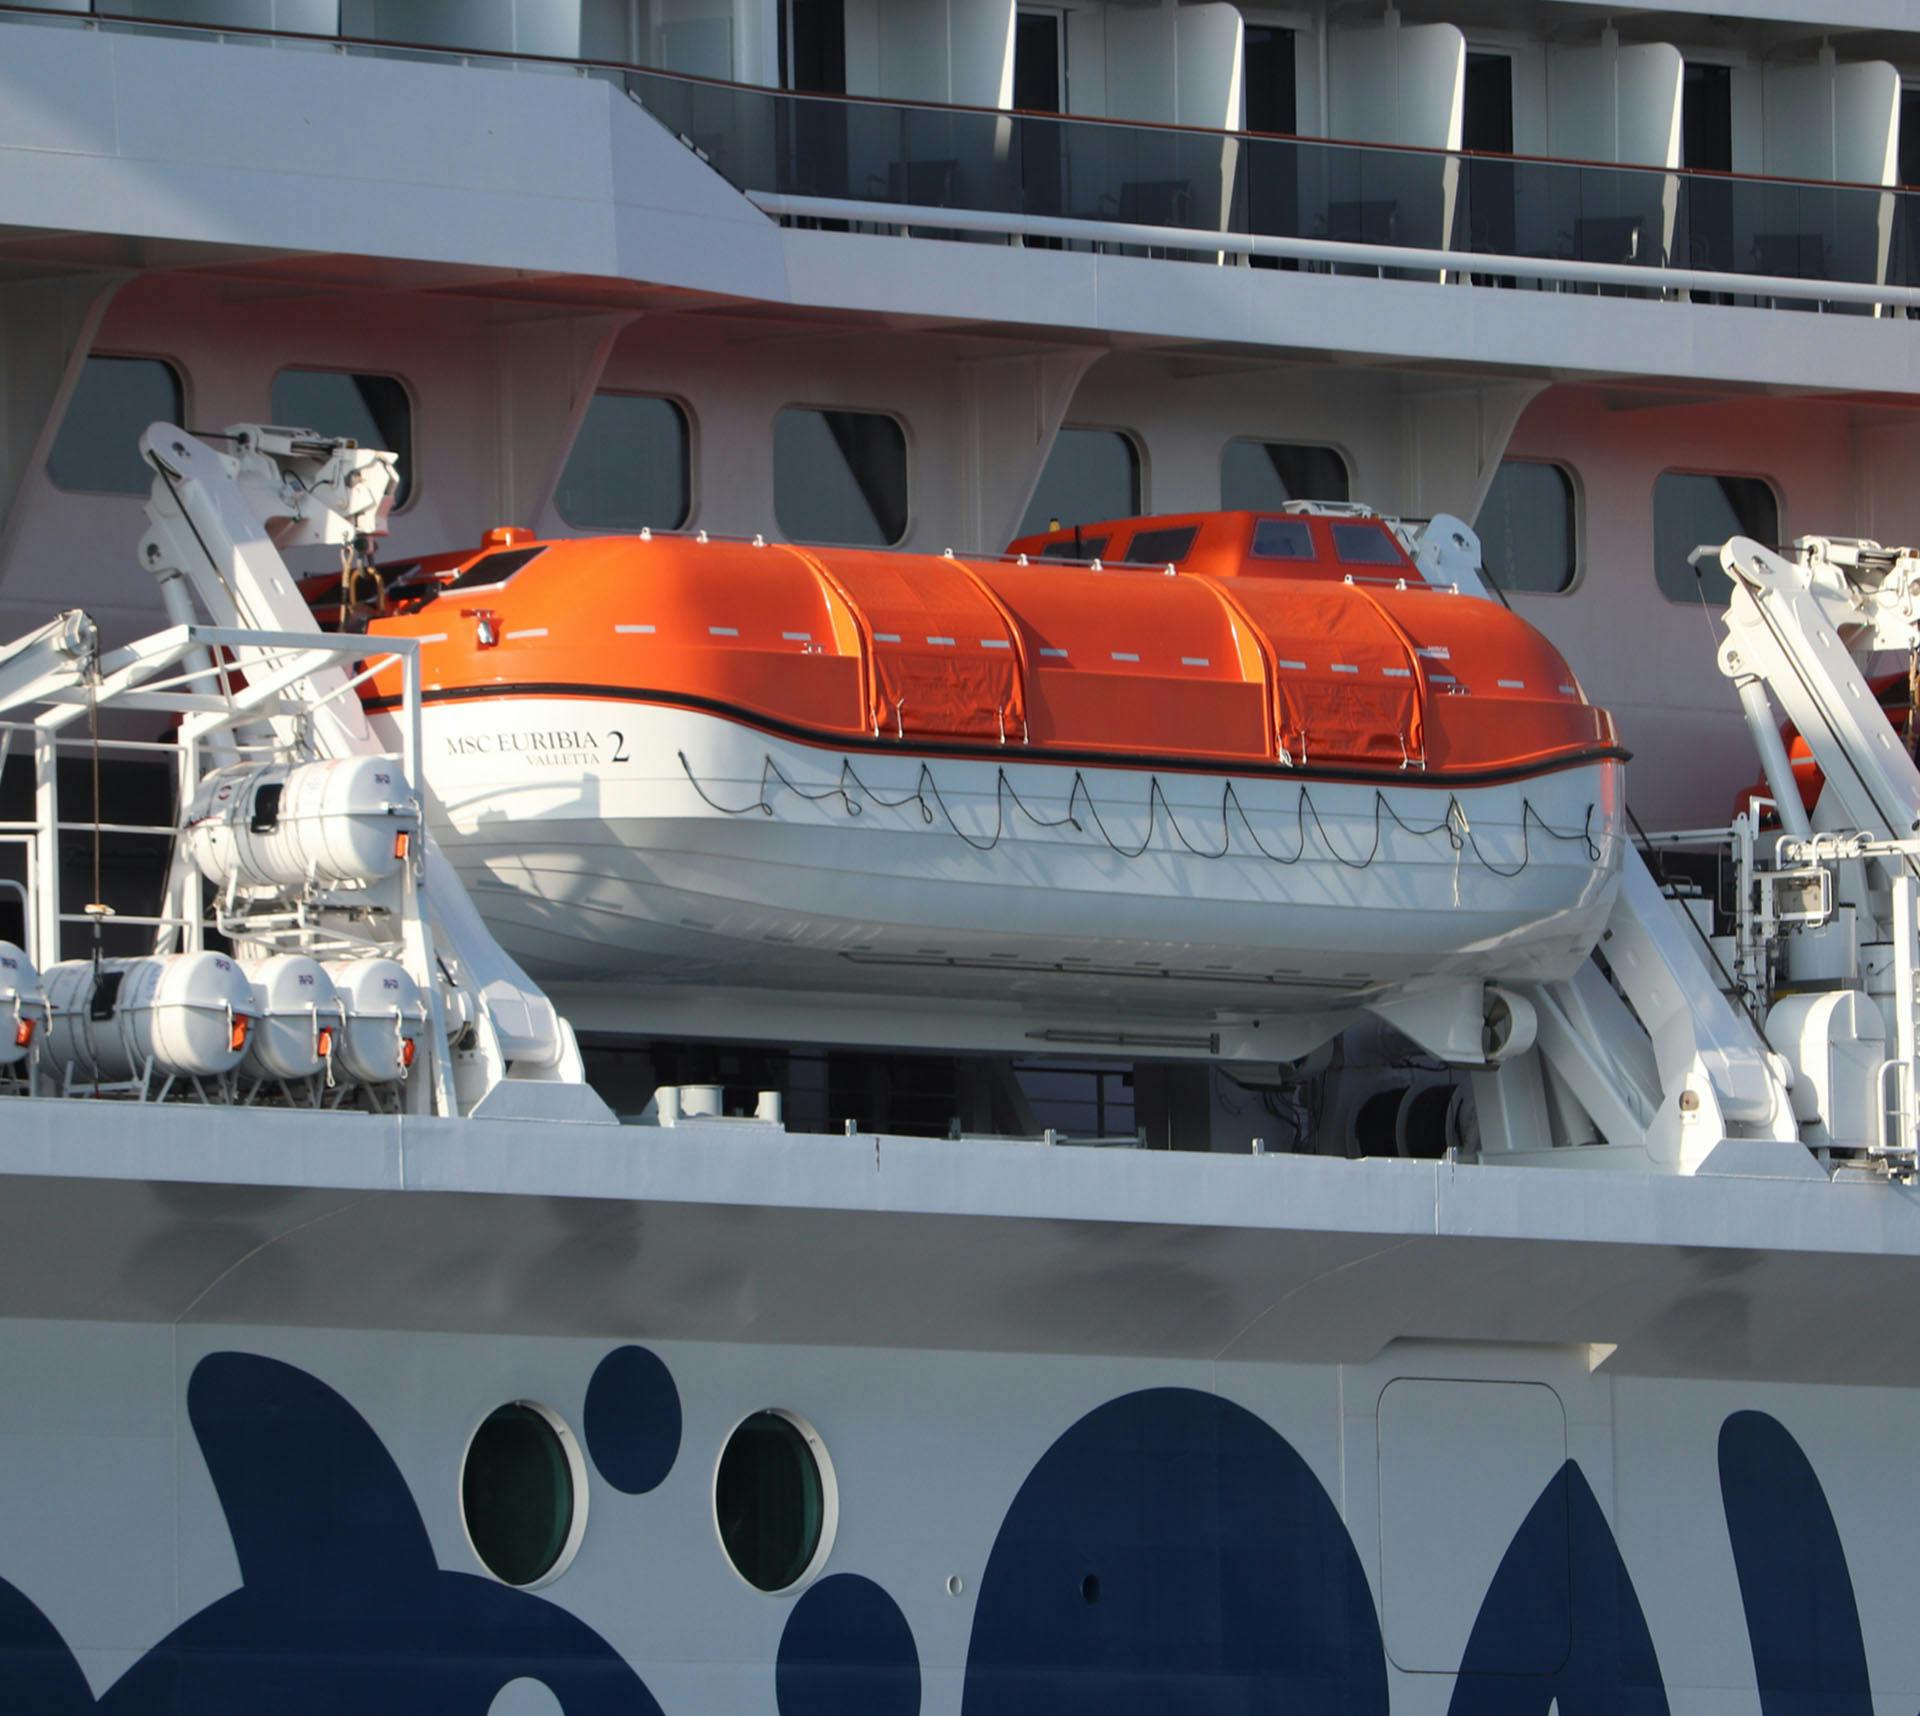 Life boat on cruise ship